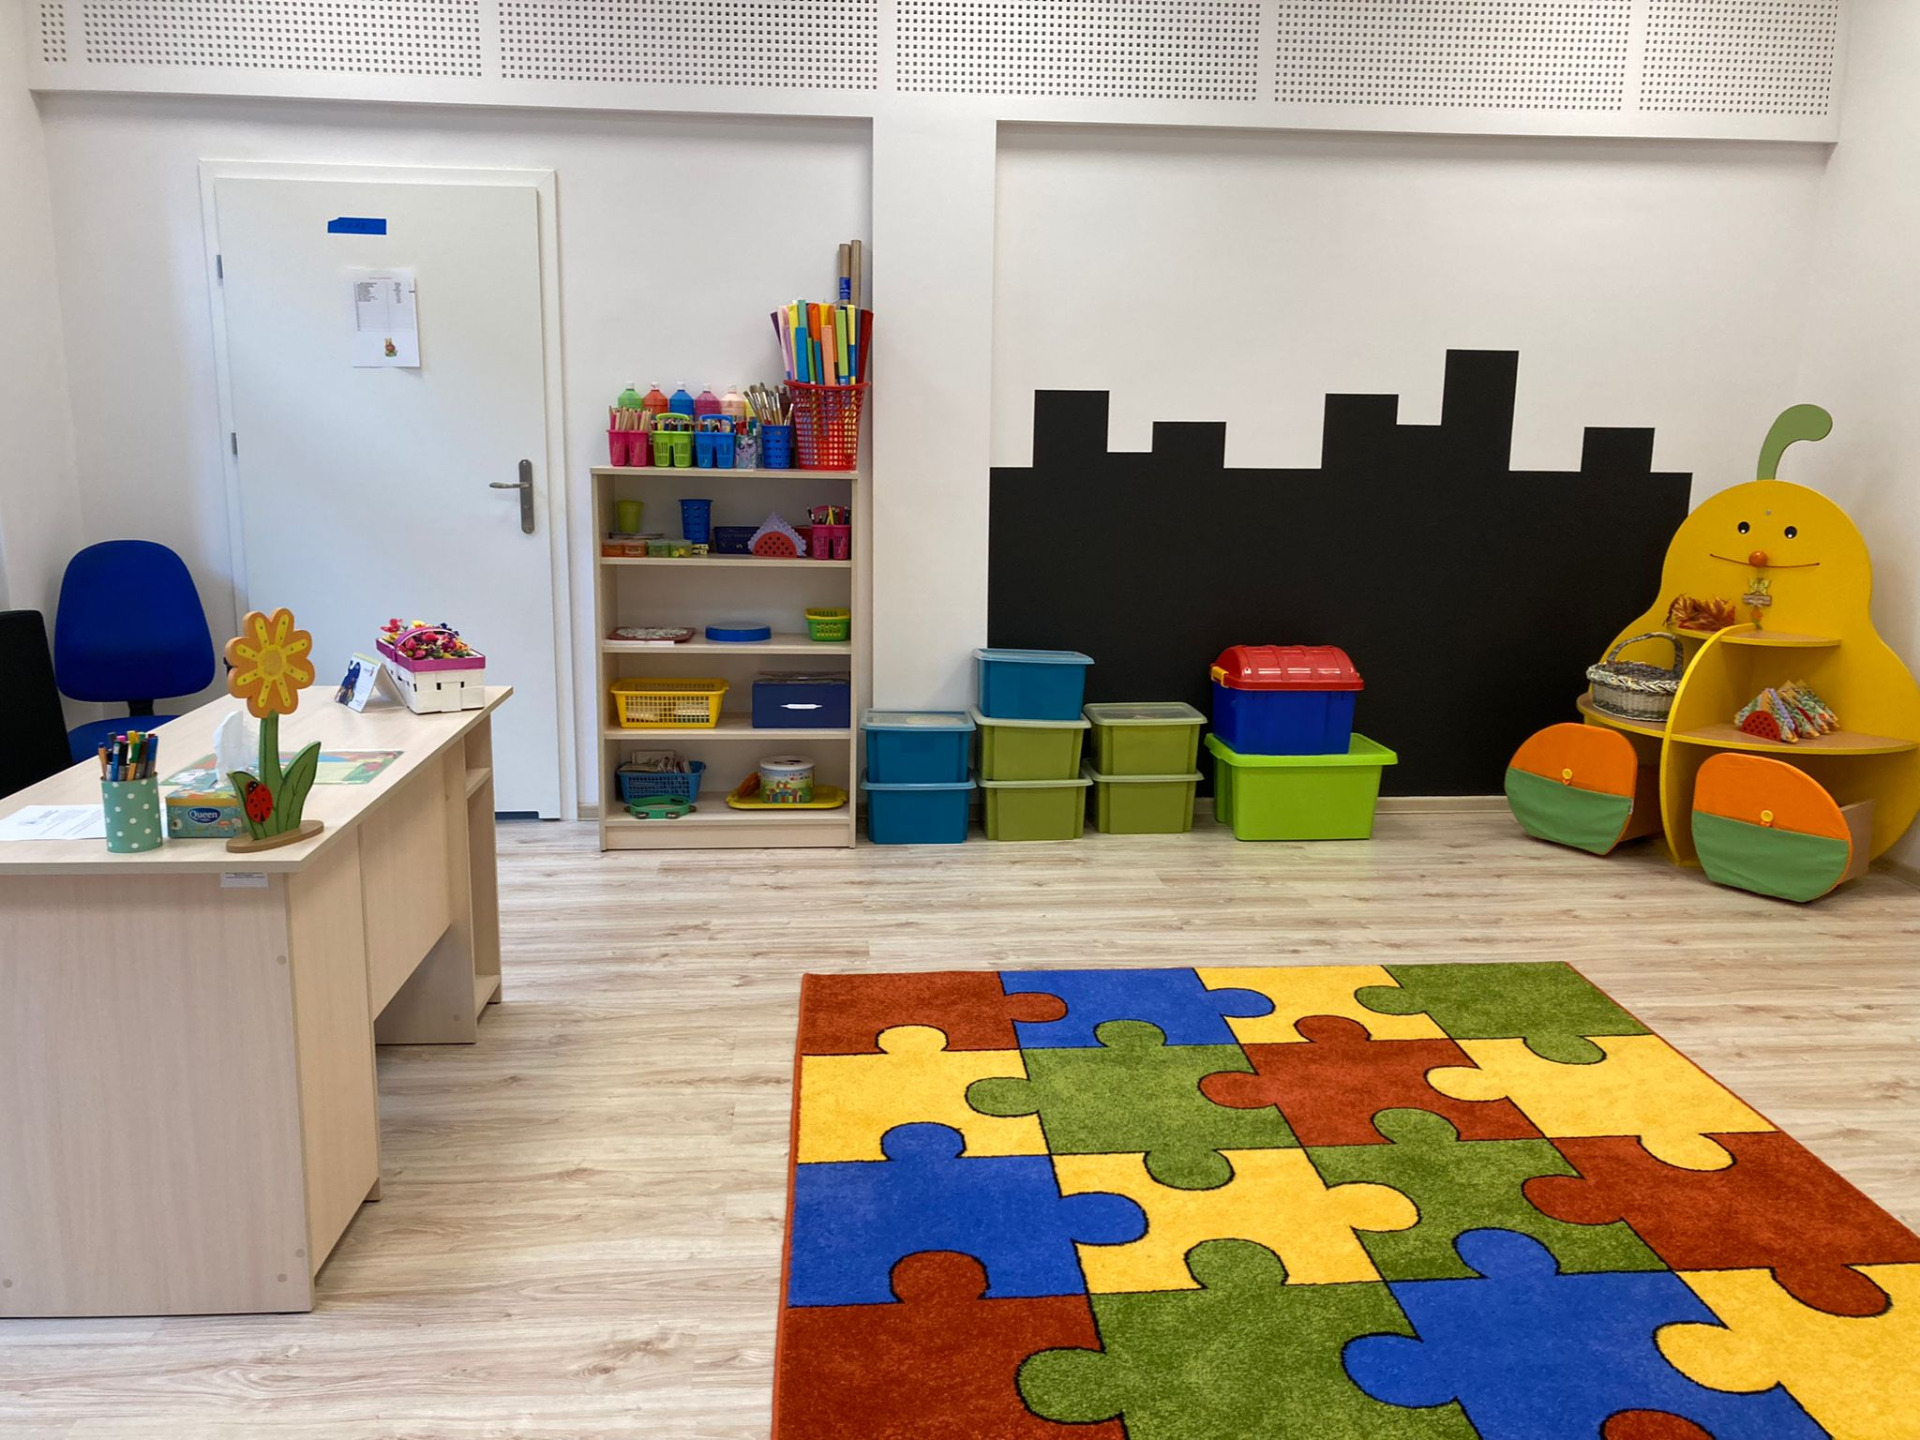 Sala gr. pierwszej. Po lewej stronie znajduje się biurko nauczycielki. Na podłodze leży kolorowy dywan. Na wprost znajduje się regał oraz pojemniki na zabawki. Po prawej stronie jest regał w kształcie gruszki.